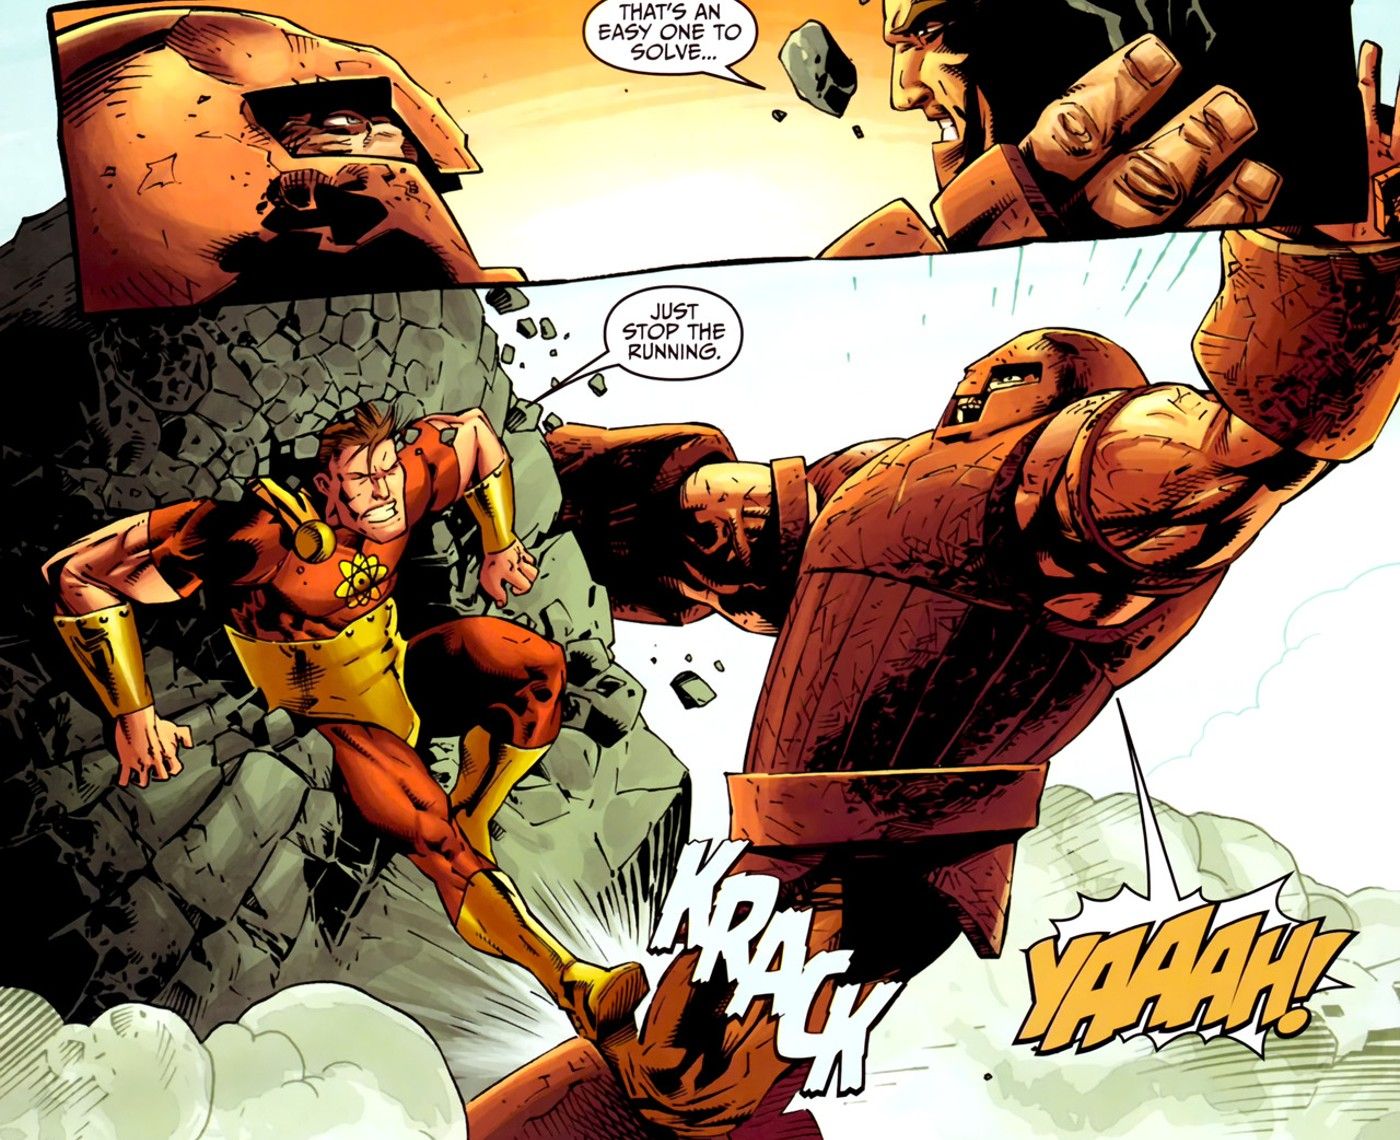 Juggernaut vs Hyperion: Who’s Stronger in Marvel Comics